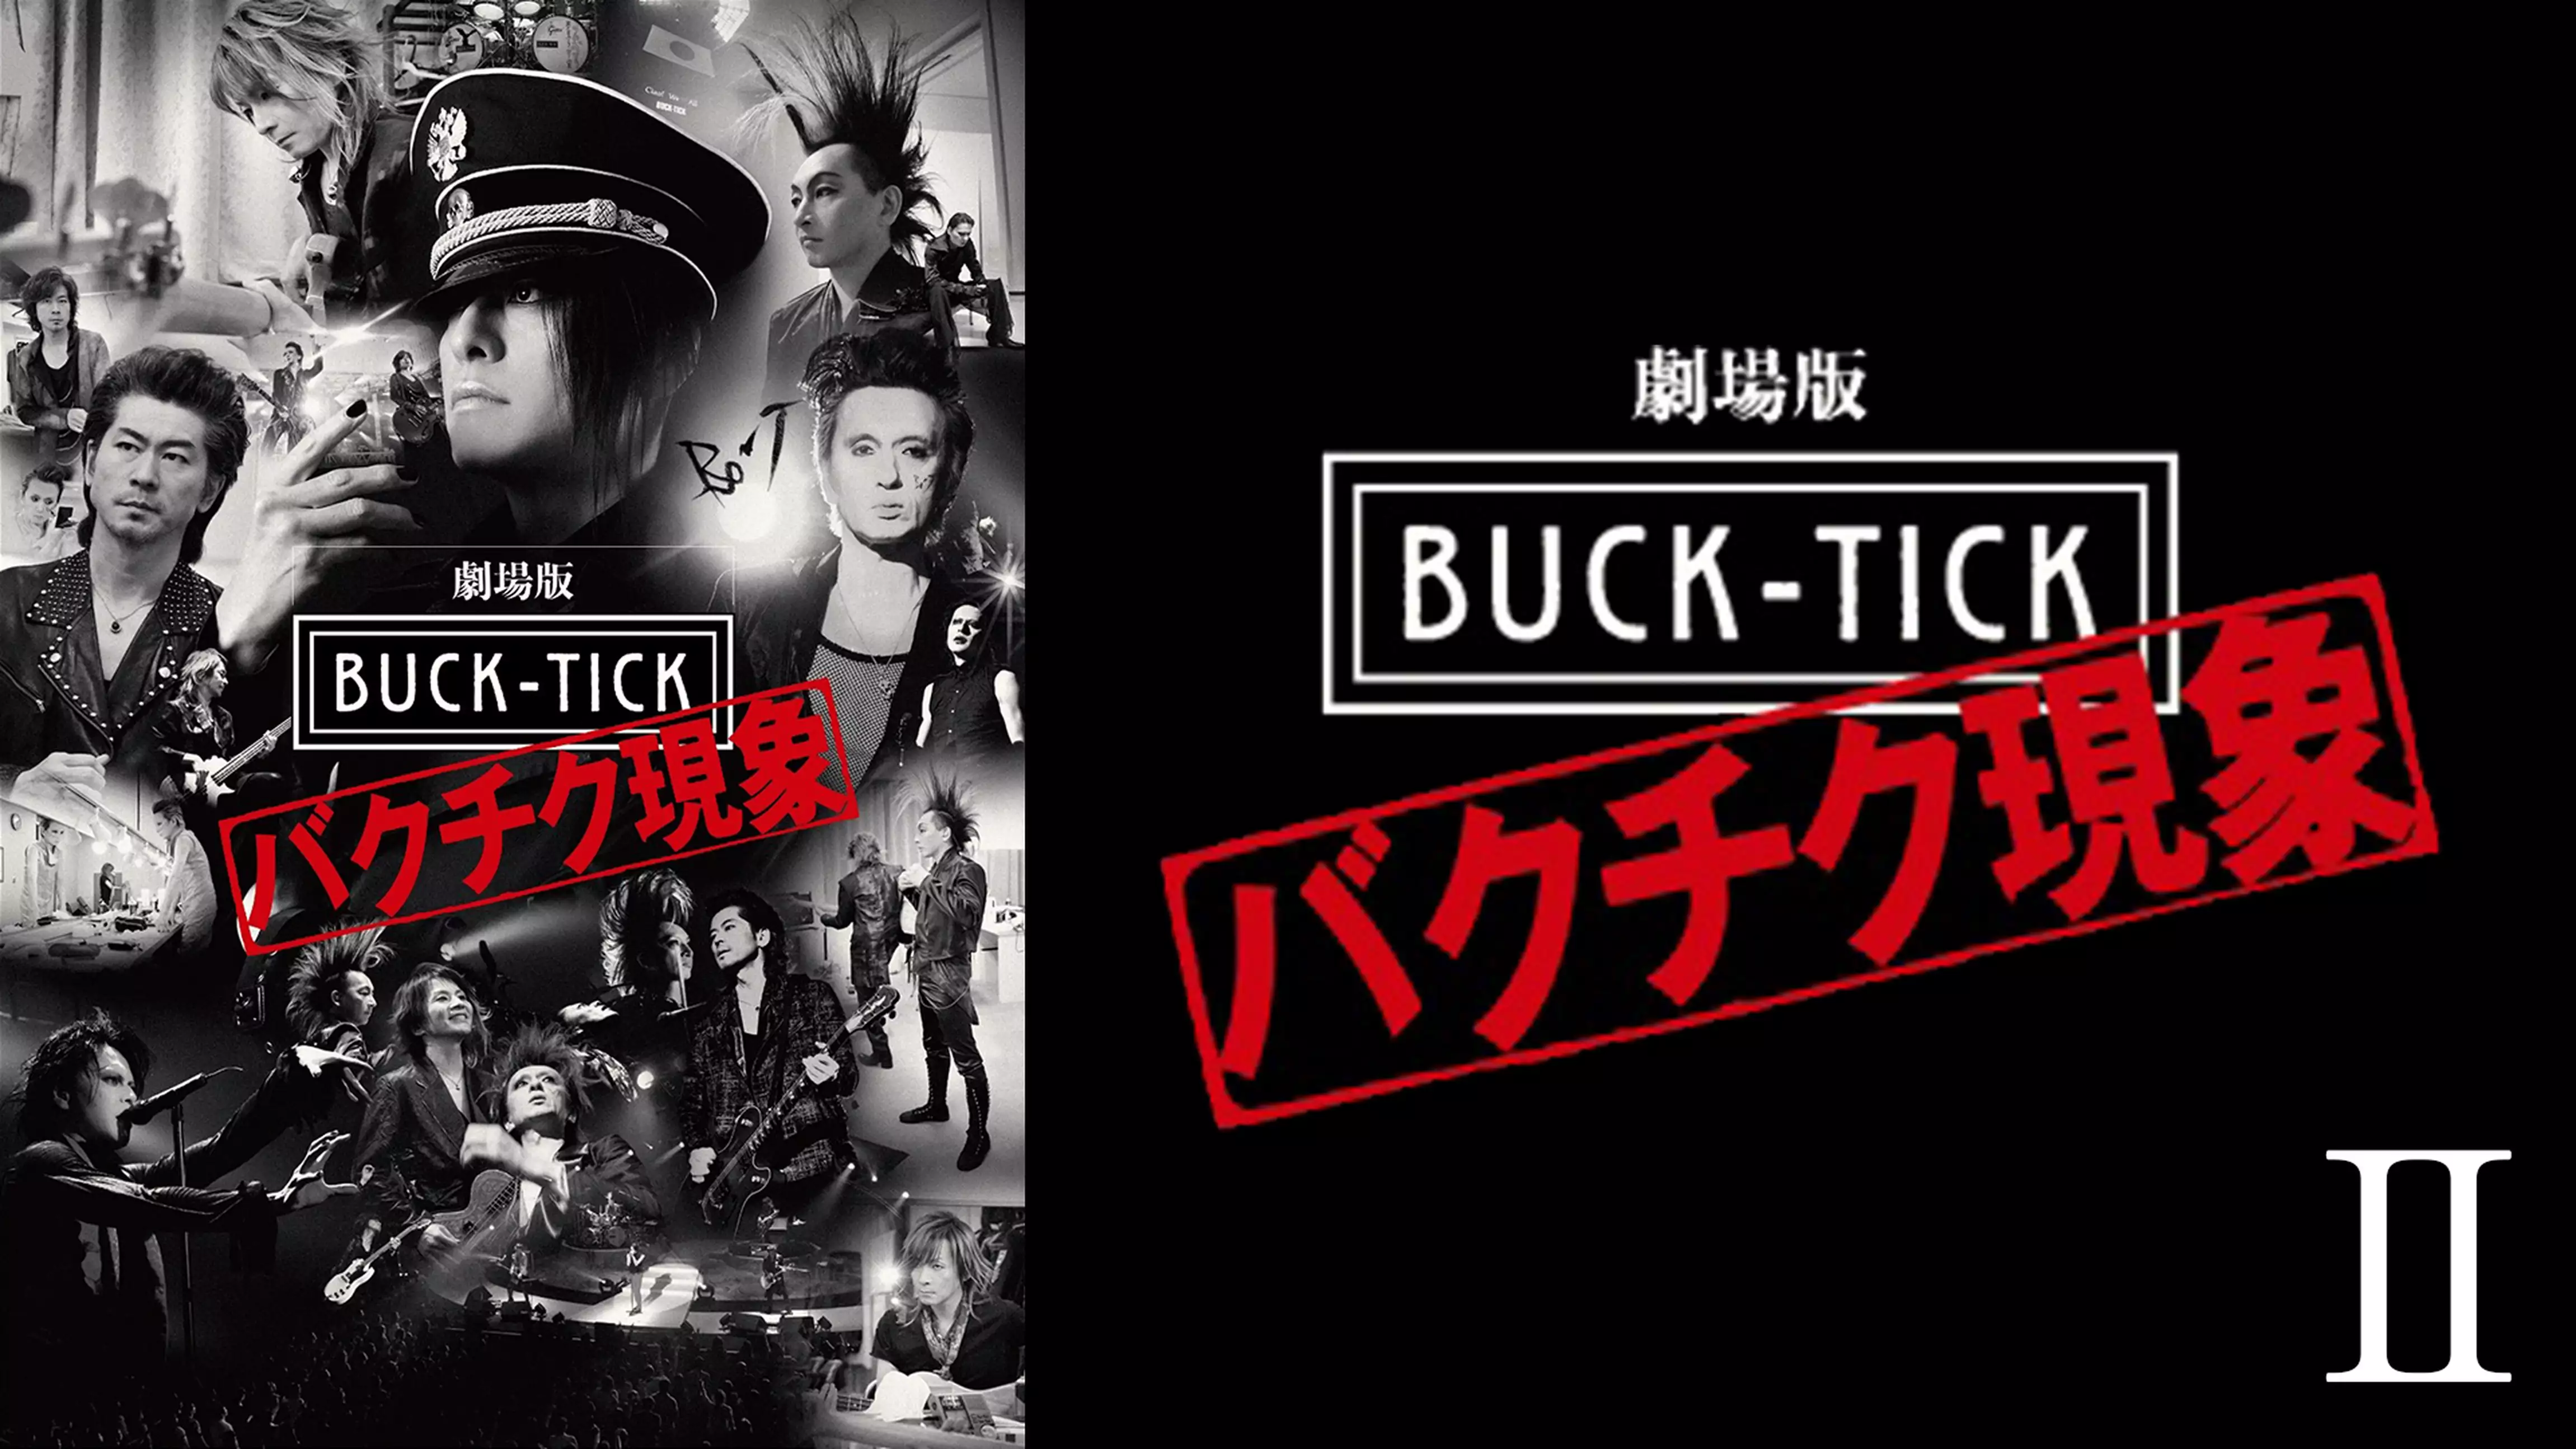 劇場版 BUCK-TICK〜バクチク現象〜Ⅱ